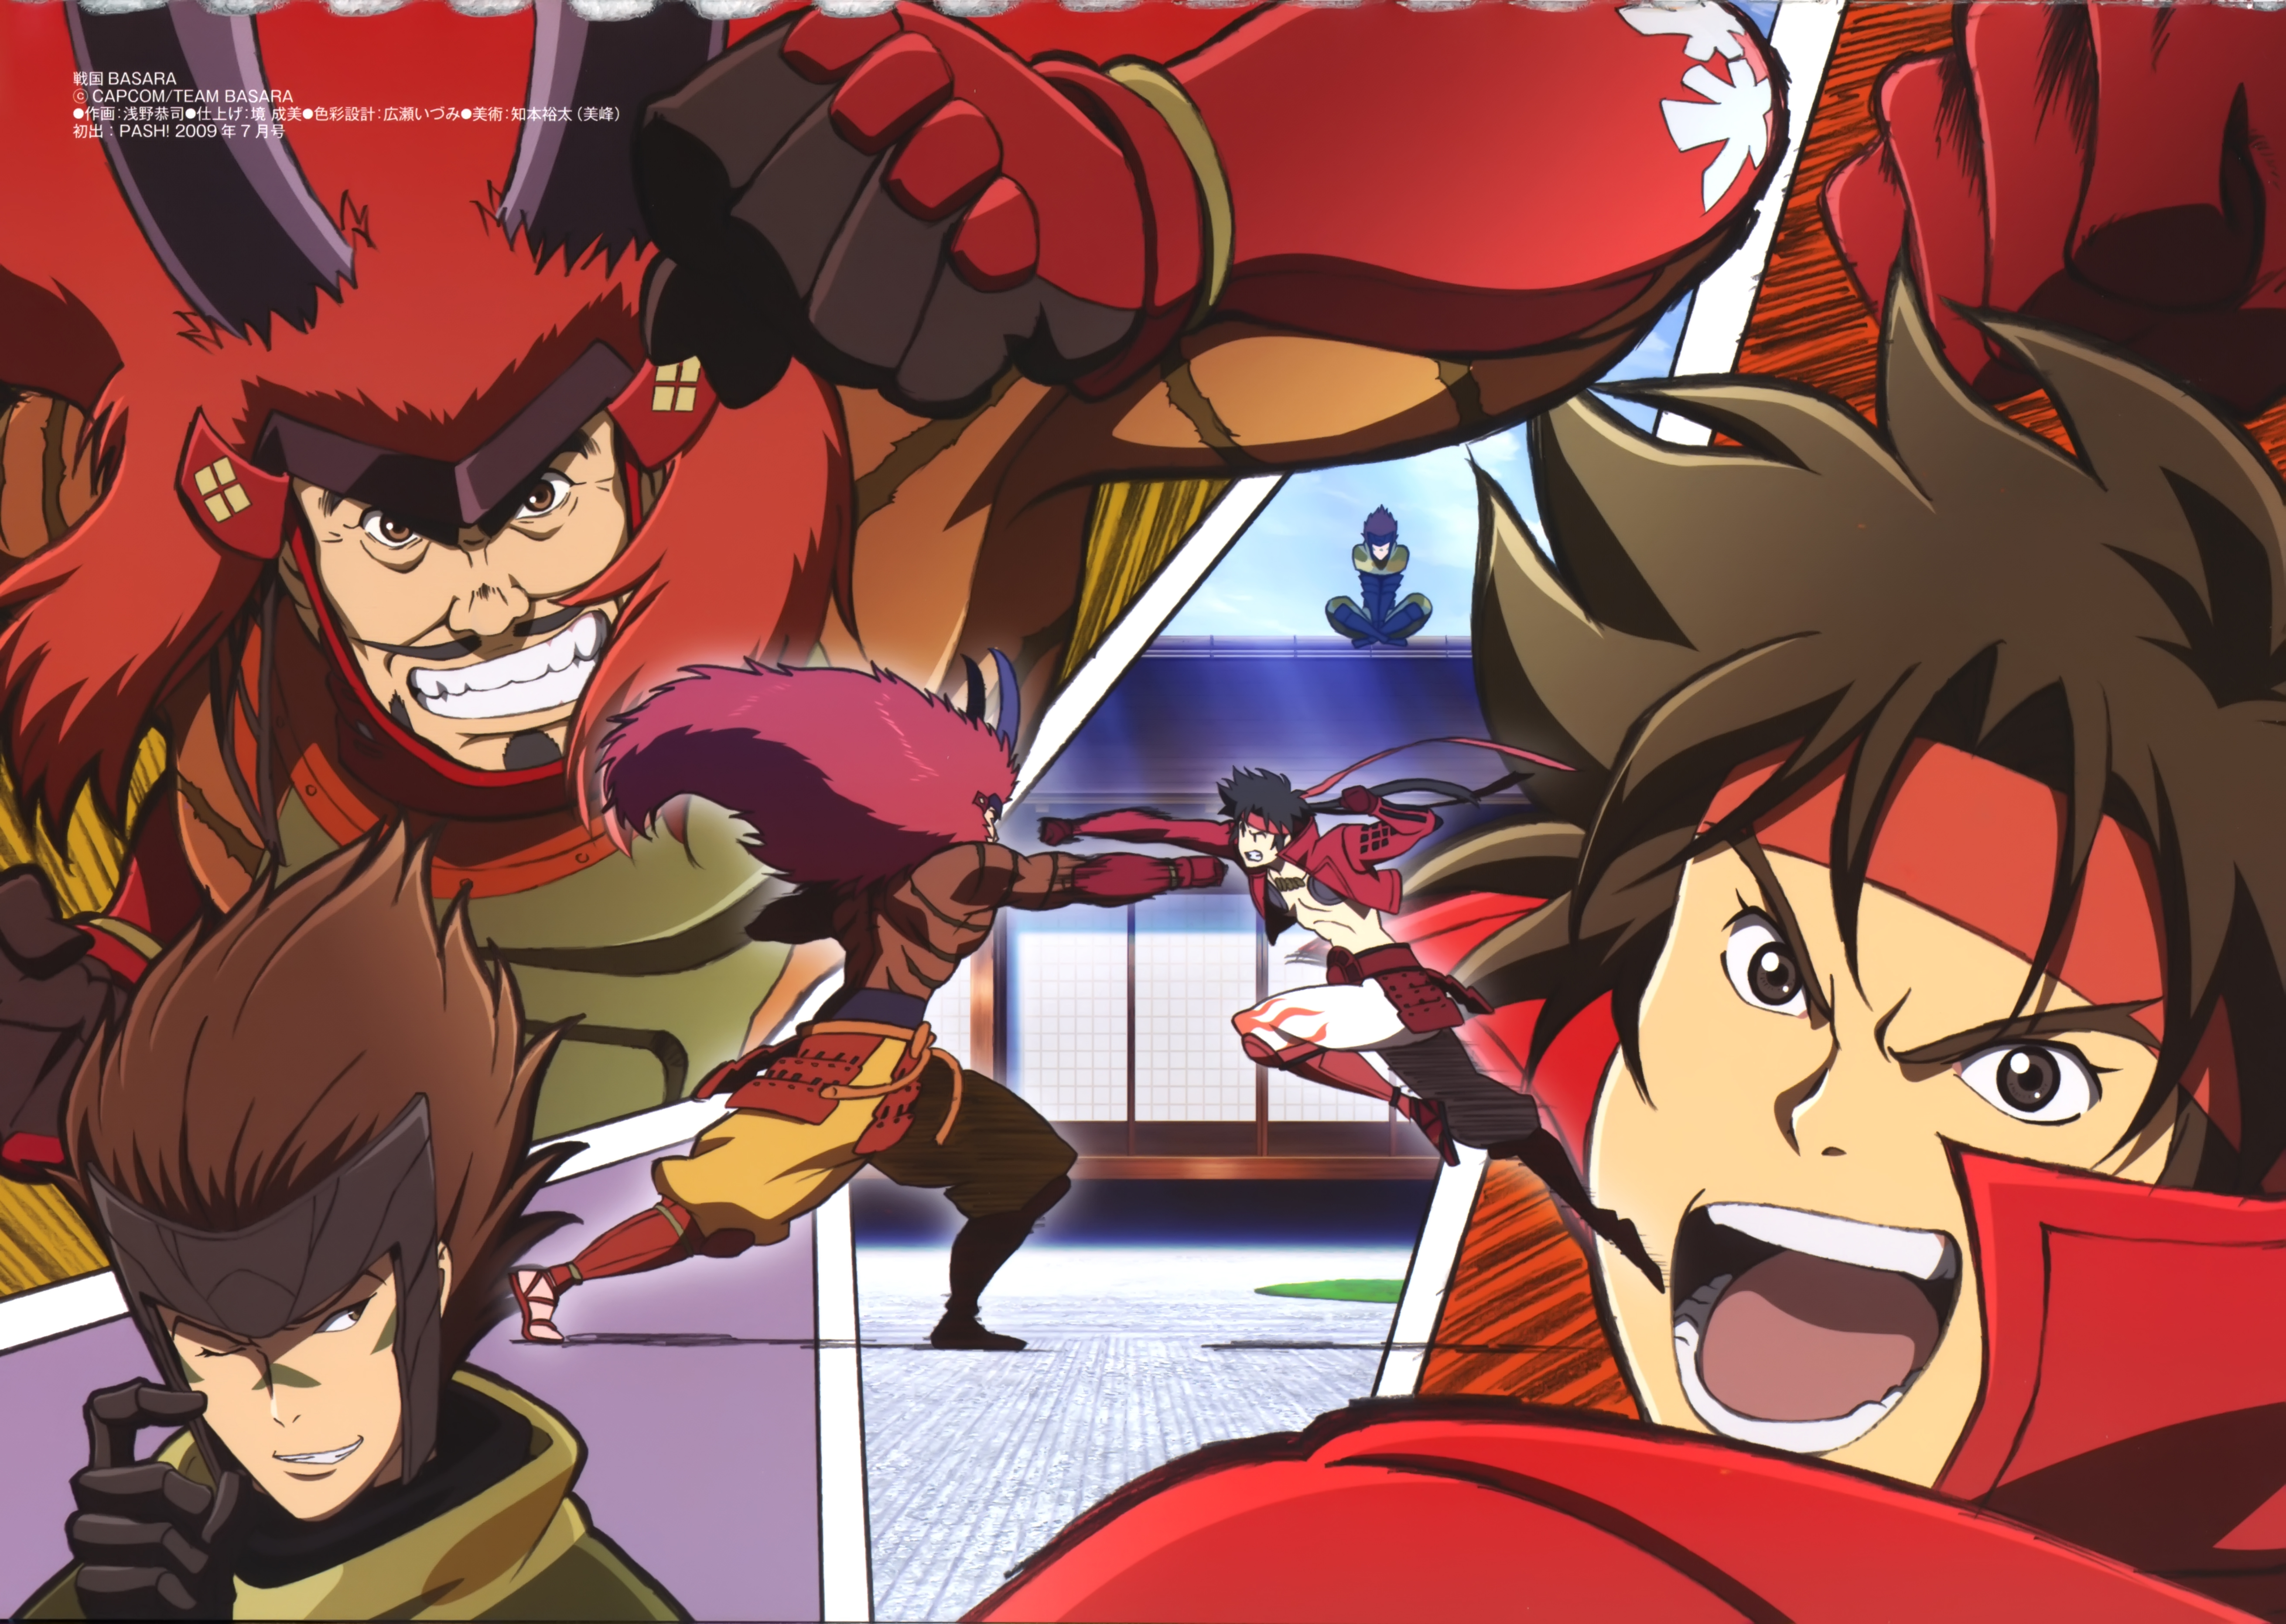 Free download wallpaper Anime, Sengoku Basara on your PC desktop